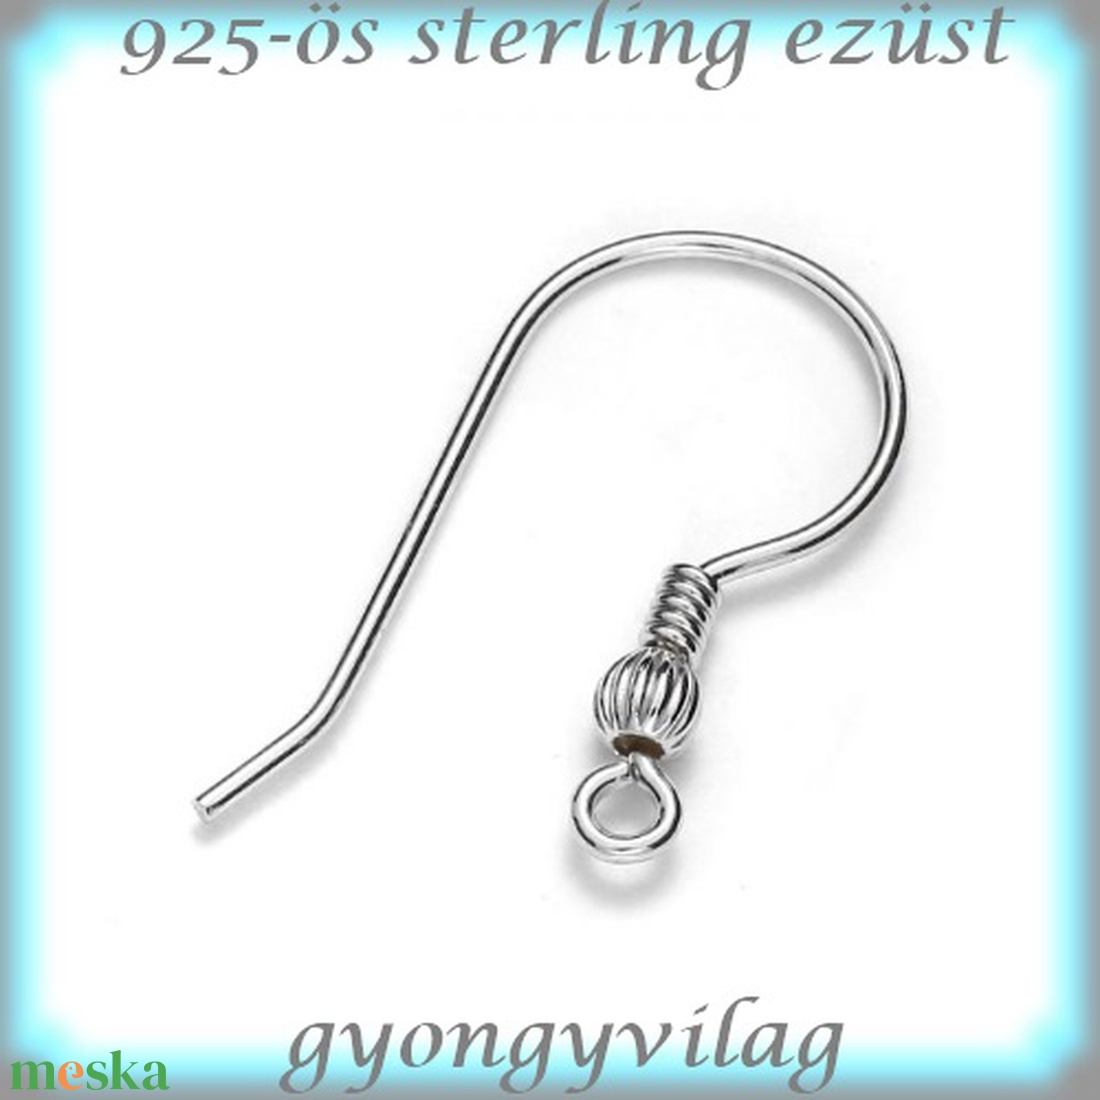 925-ös sterling ezüst ékszerkellék: fülbevaló kapocs, akasztós EFK A 65-2 - gyöngy, ékszerkellék - egyéb alkatrész - Meska.hu